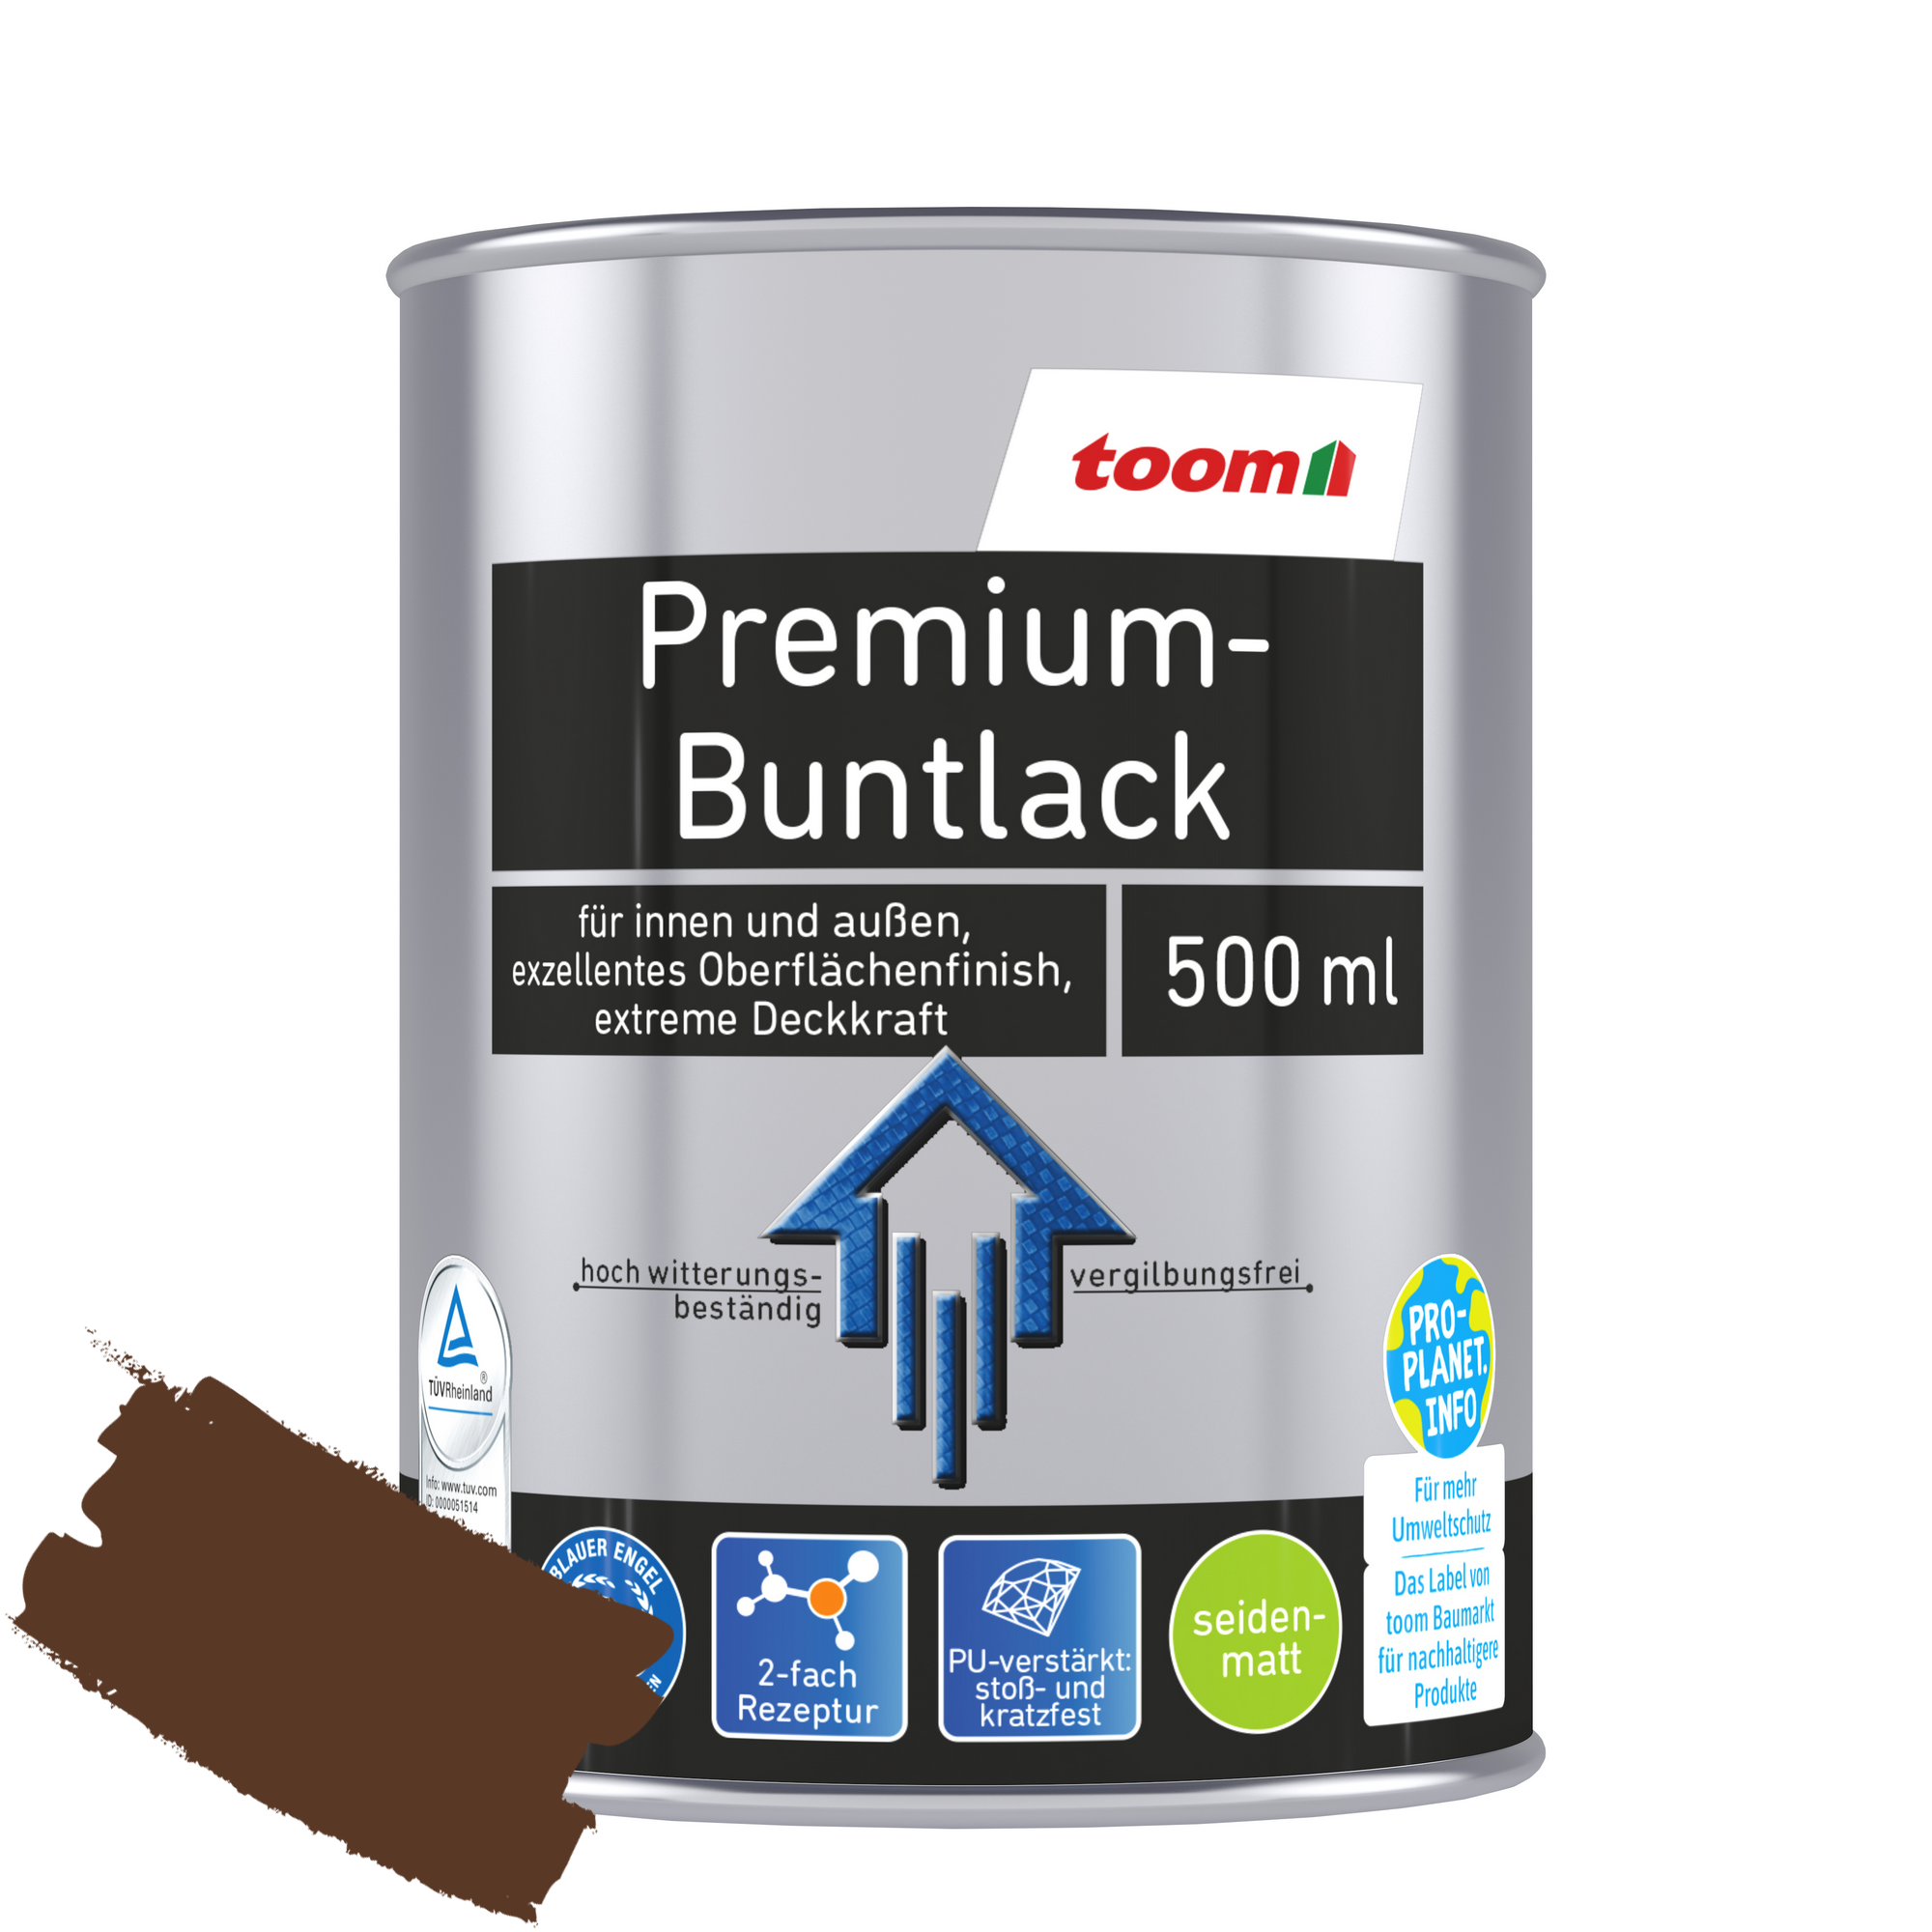 Premium-Buntlack nussbraun seidenmatt 500 ml + product picture